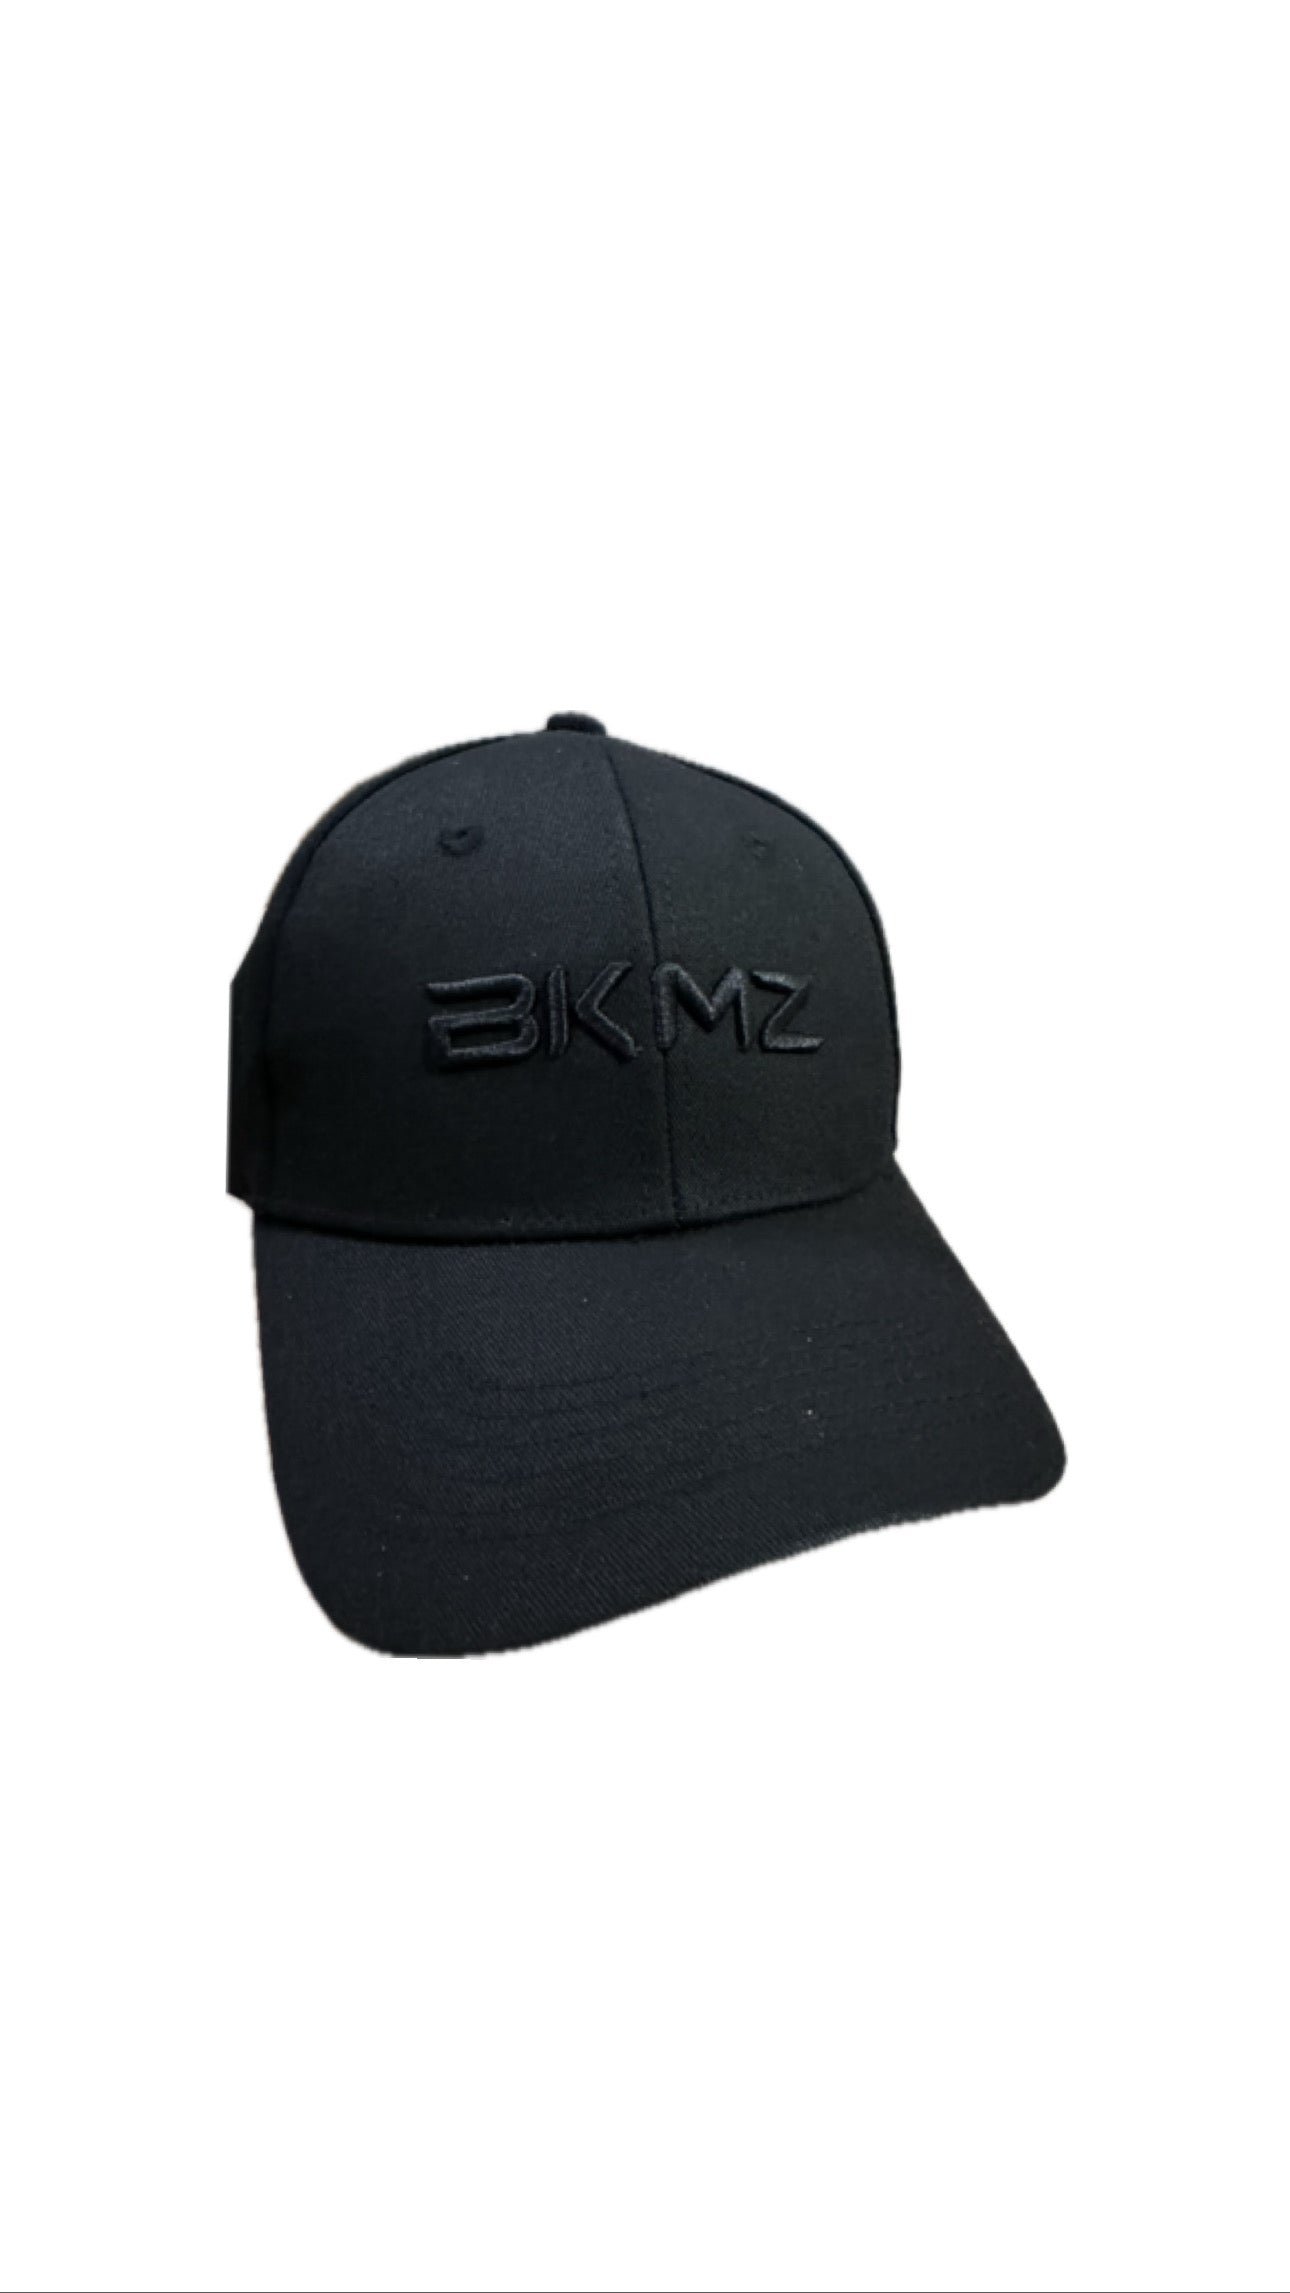 BKMZ - Essential Caps